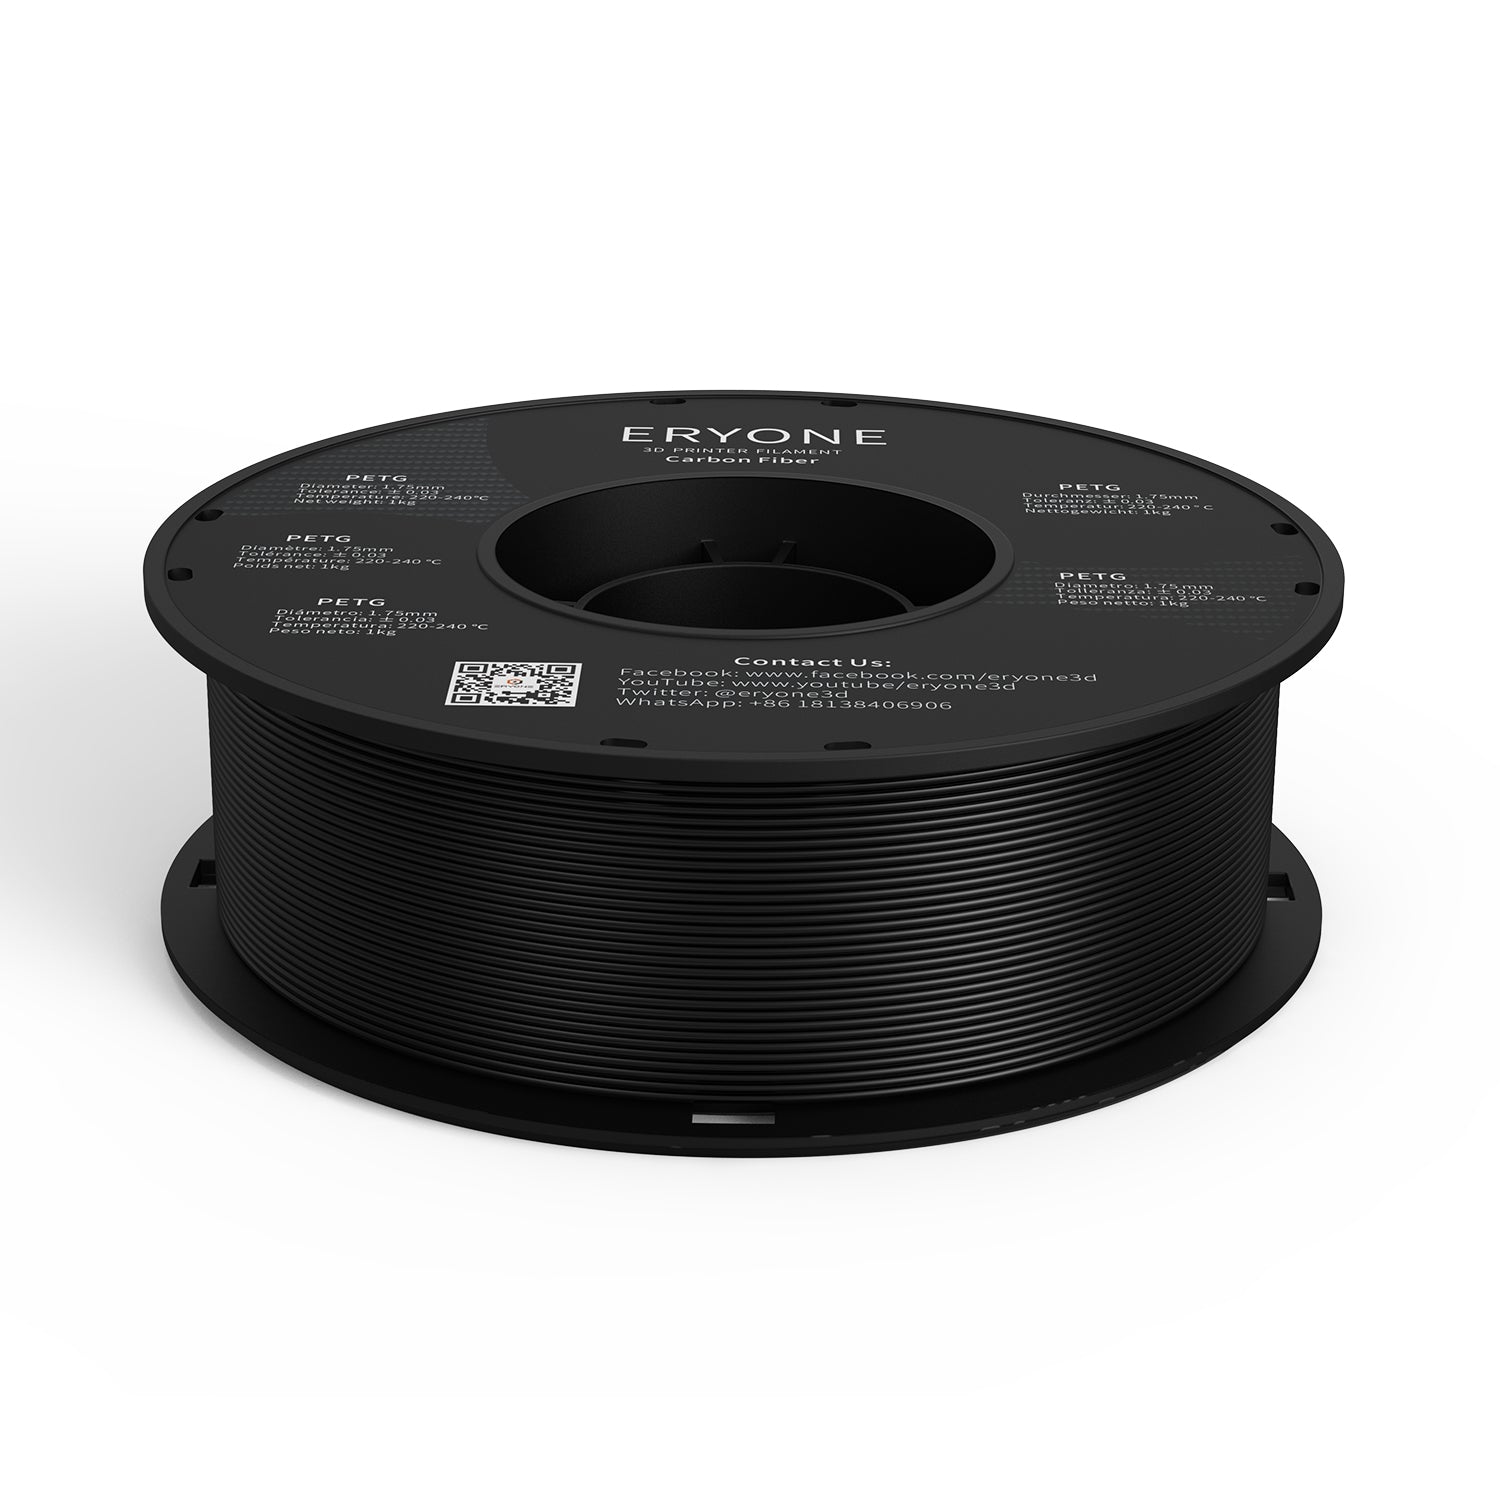 ERYONE Carbon Fiber PETG 3D Printer Filament 1.75mm, Dimensional Accuracy +/- 0.05 mm 1kg (2.2LBS)/Spool